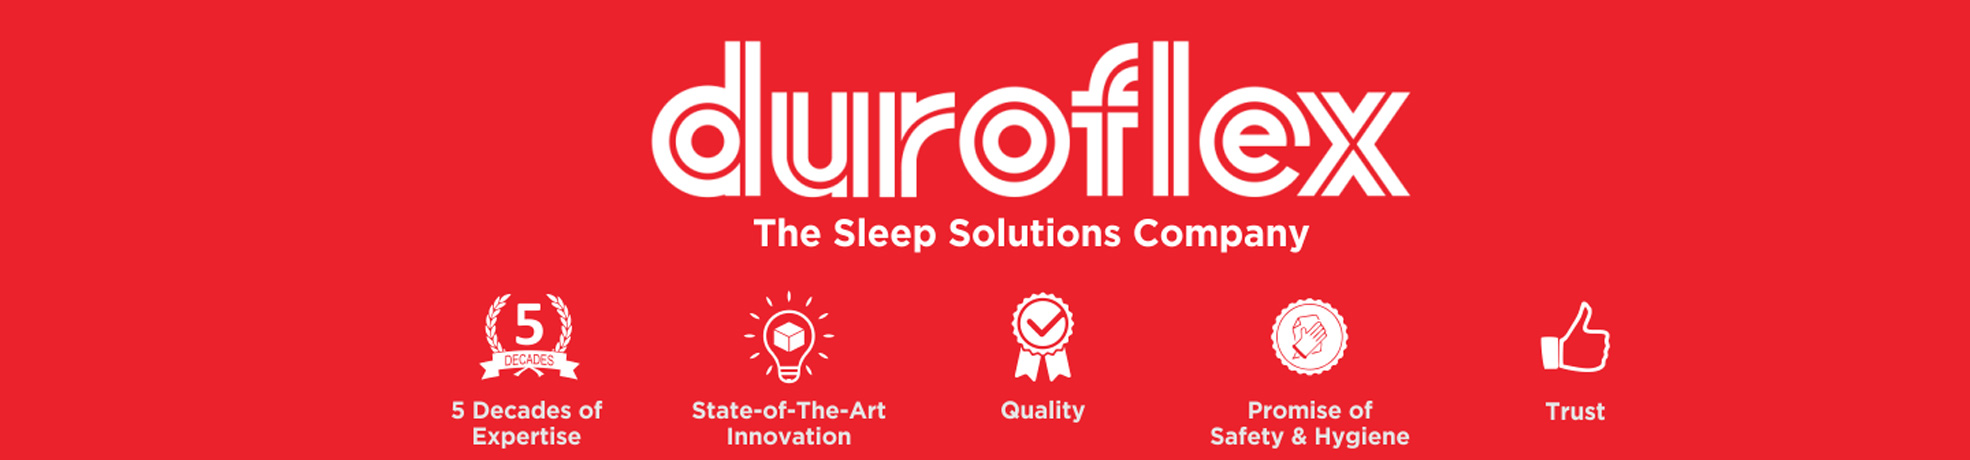 Duroflex mattress store in Chennai